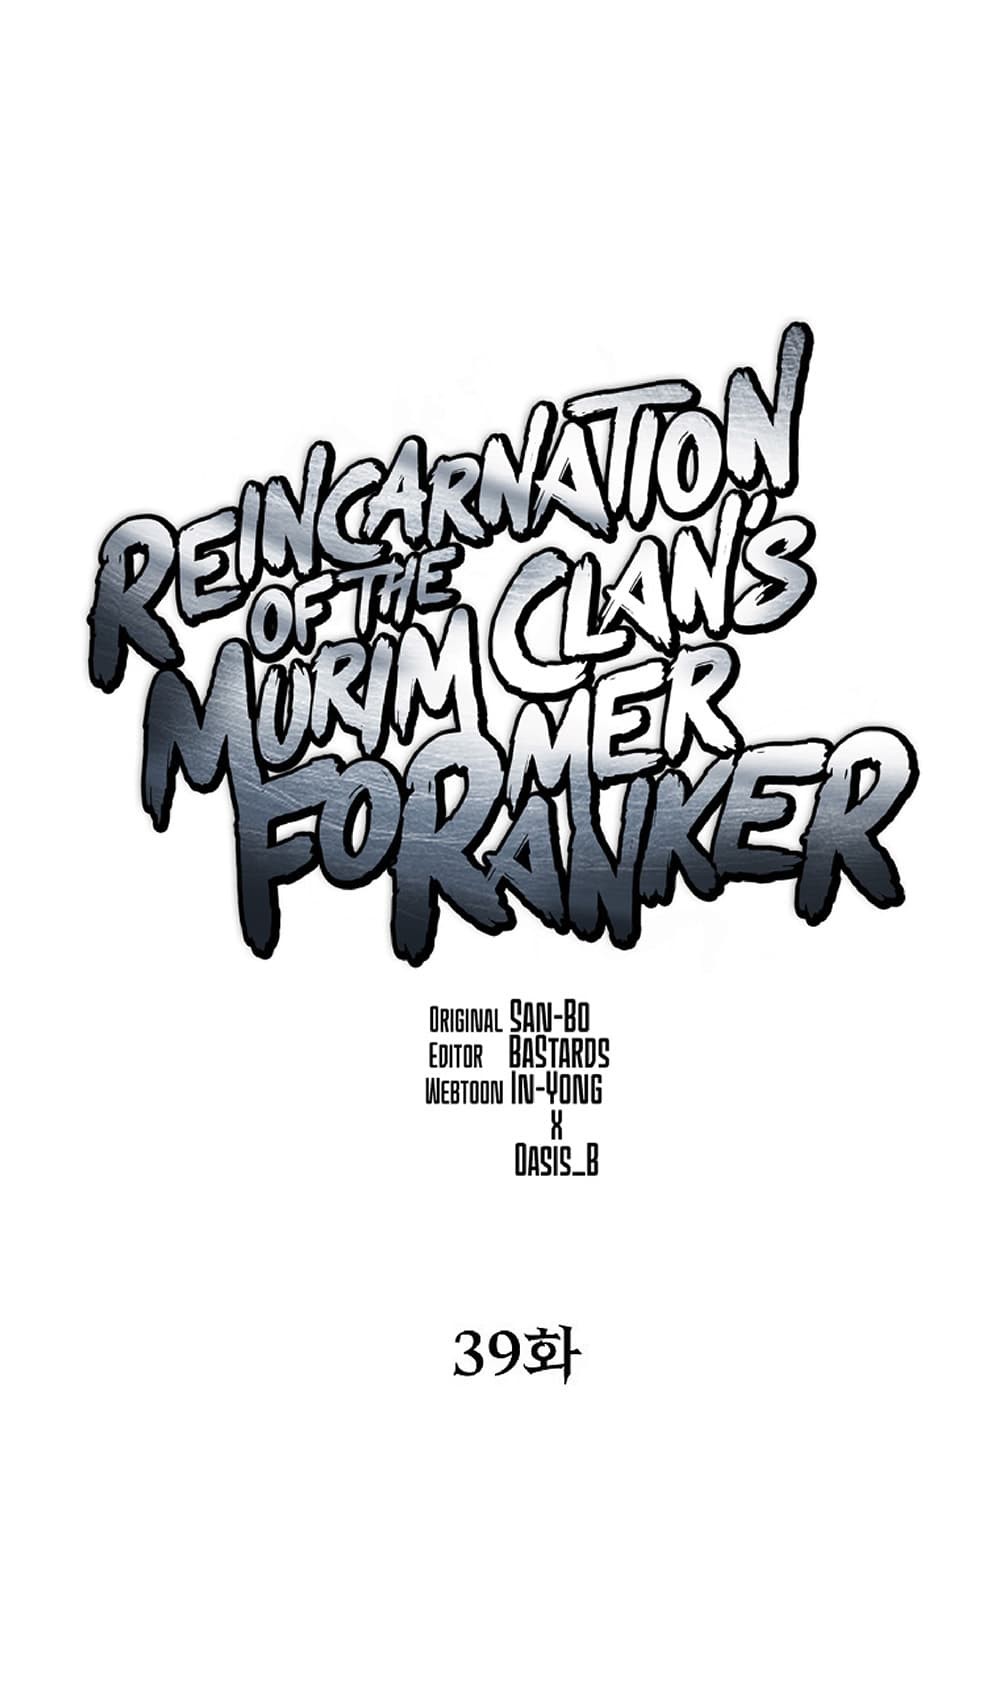 Reincarnation-of-the-Murim-Clans-Former-Ranker-39_39.jpg